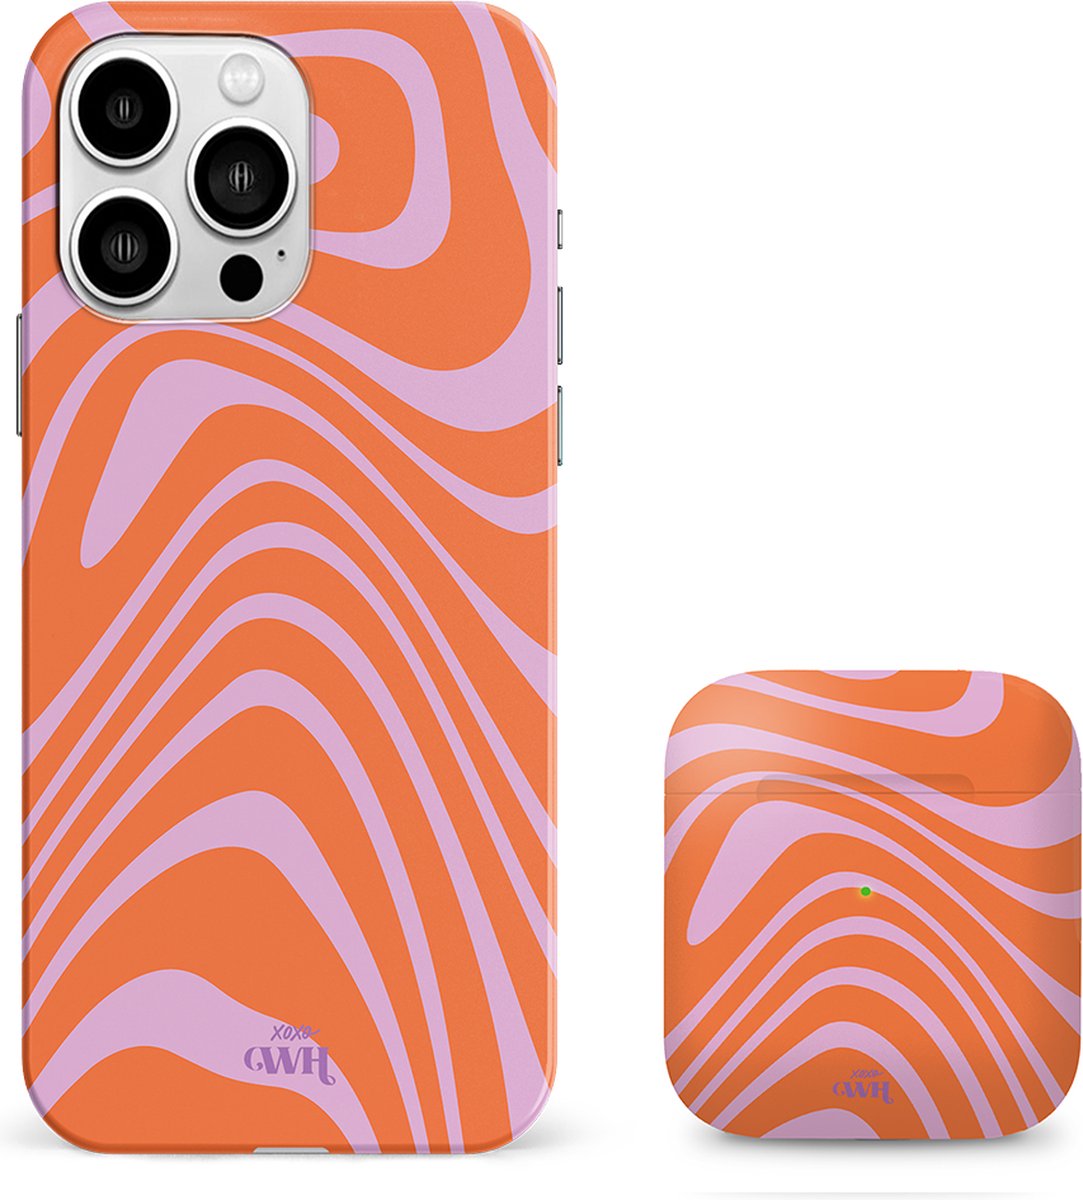 xoxo Wildhearts siliconen hoesje + AirPods 1/2 hoesje - Geschikt voor iPhone 12 Pro Max en AirPods 1 en 2 - Boogie Wonderland Orange - Single layer telefoonhoesje - Oranje - Roze - Hoesje met print